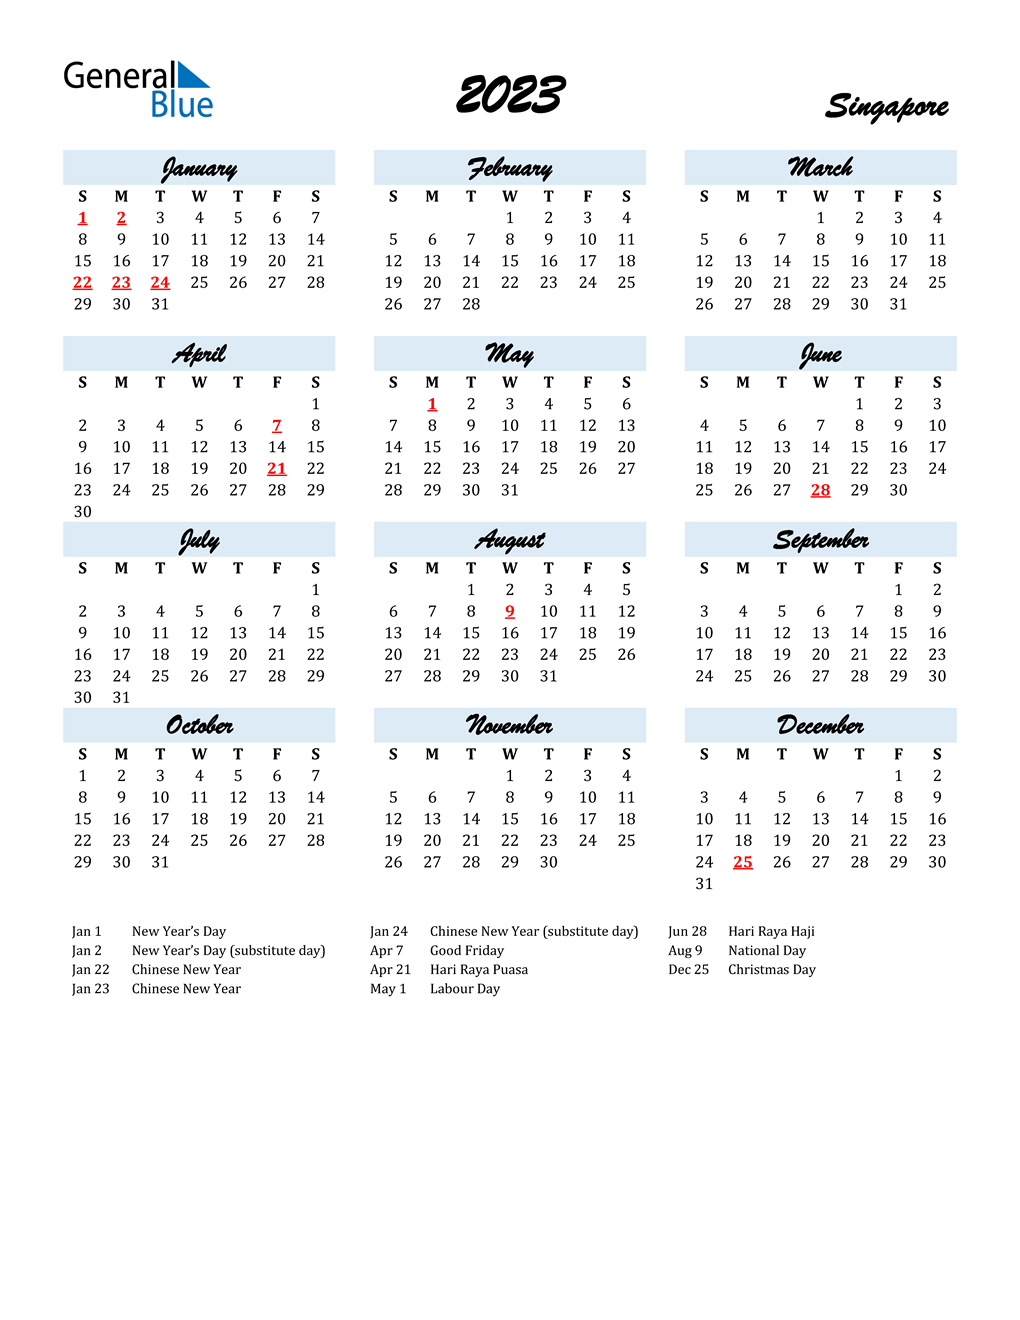 Pcsb 2022 23 Calendar 2023 Singapore Calendar With Holidays